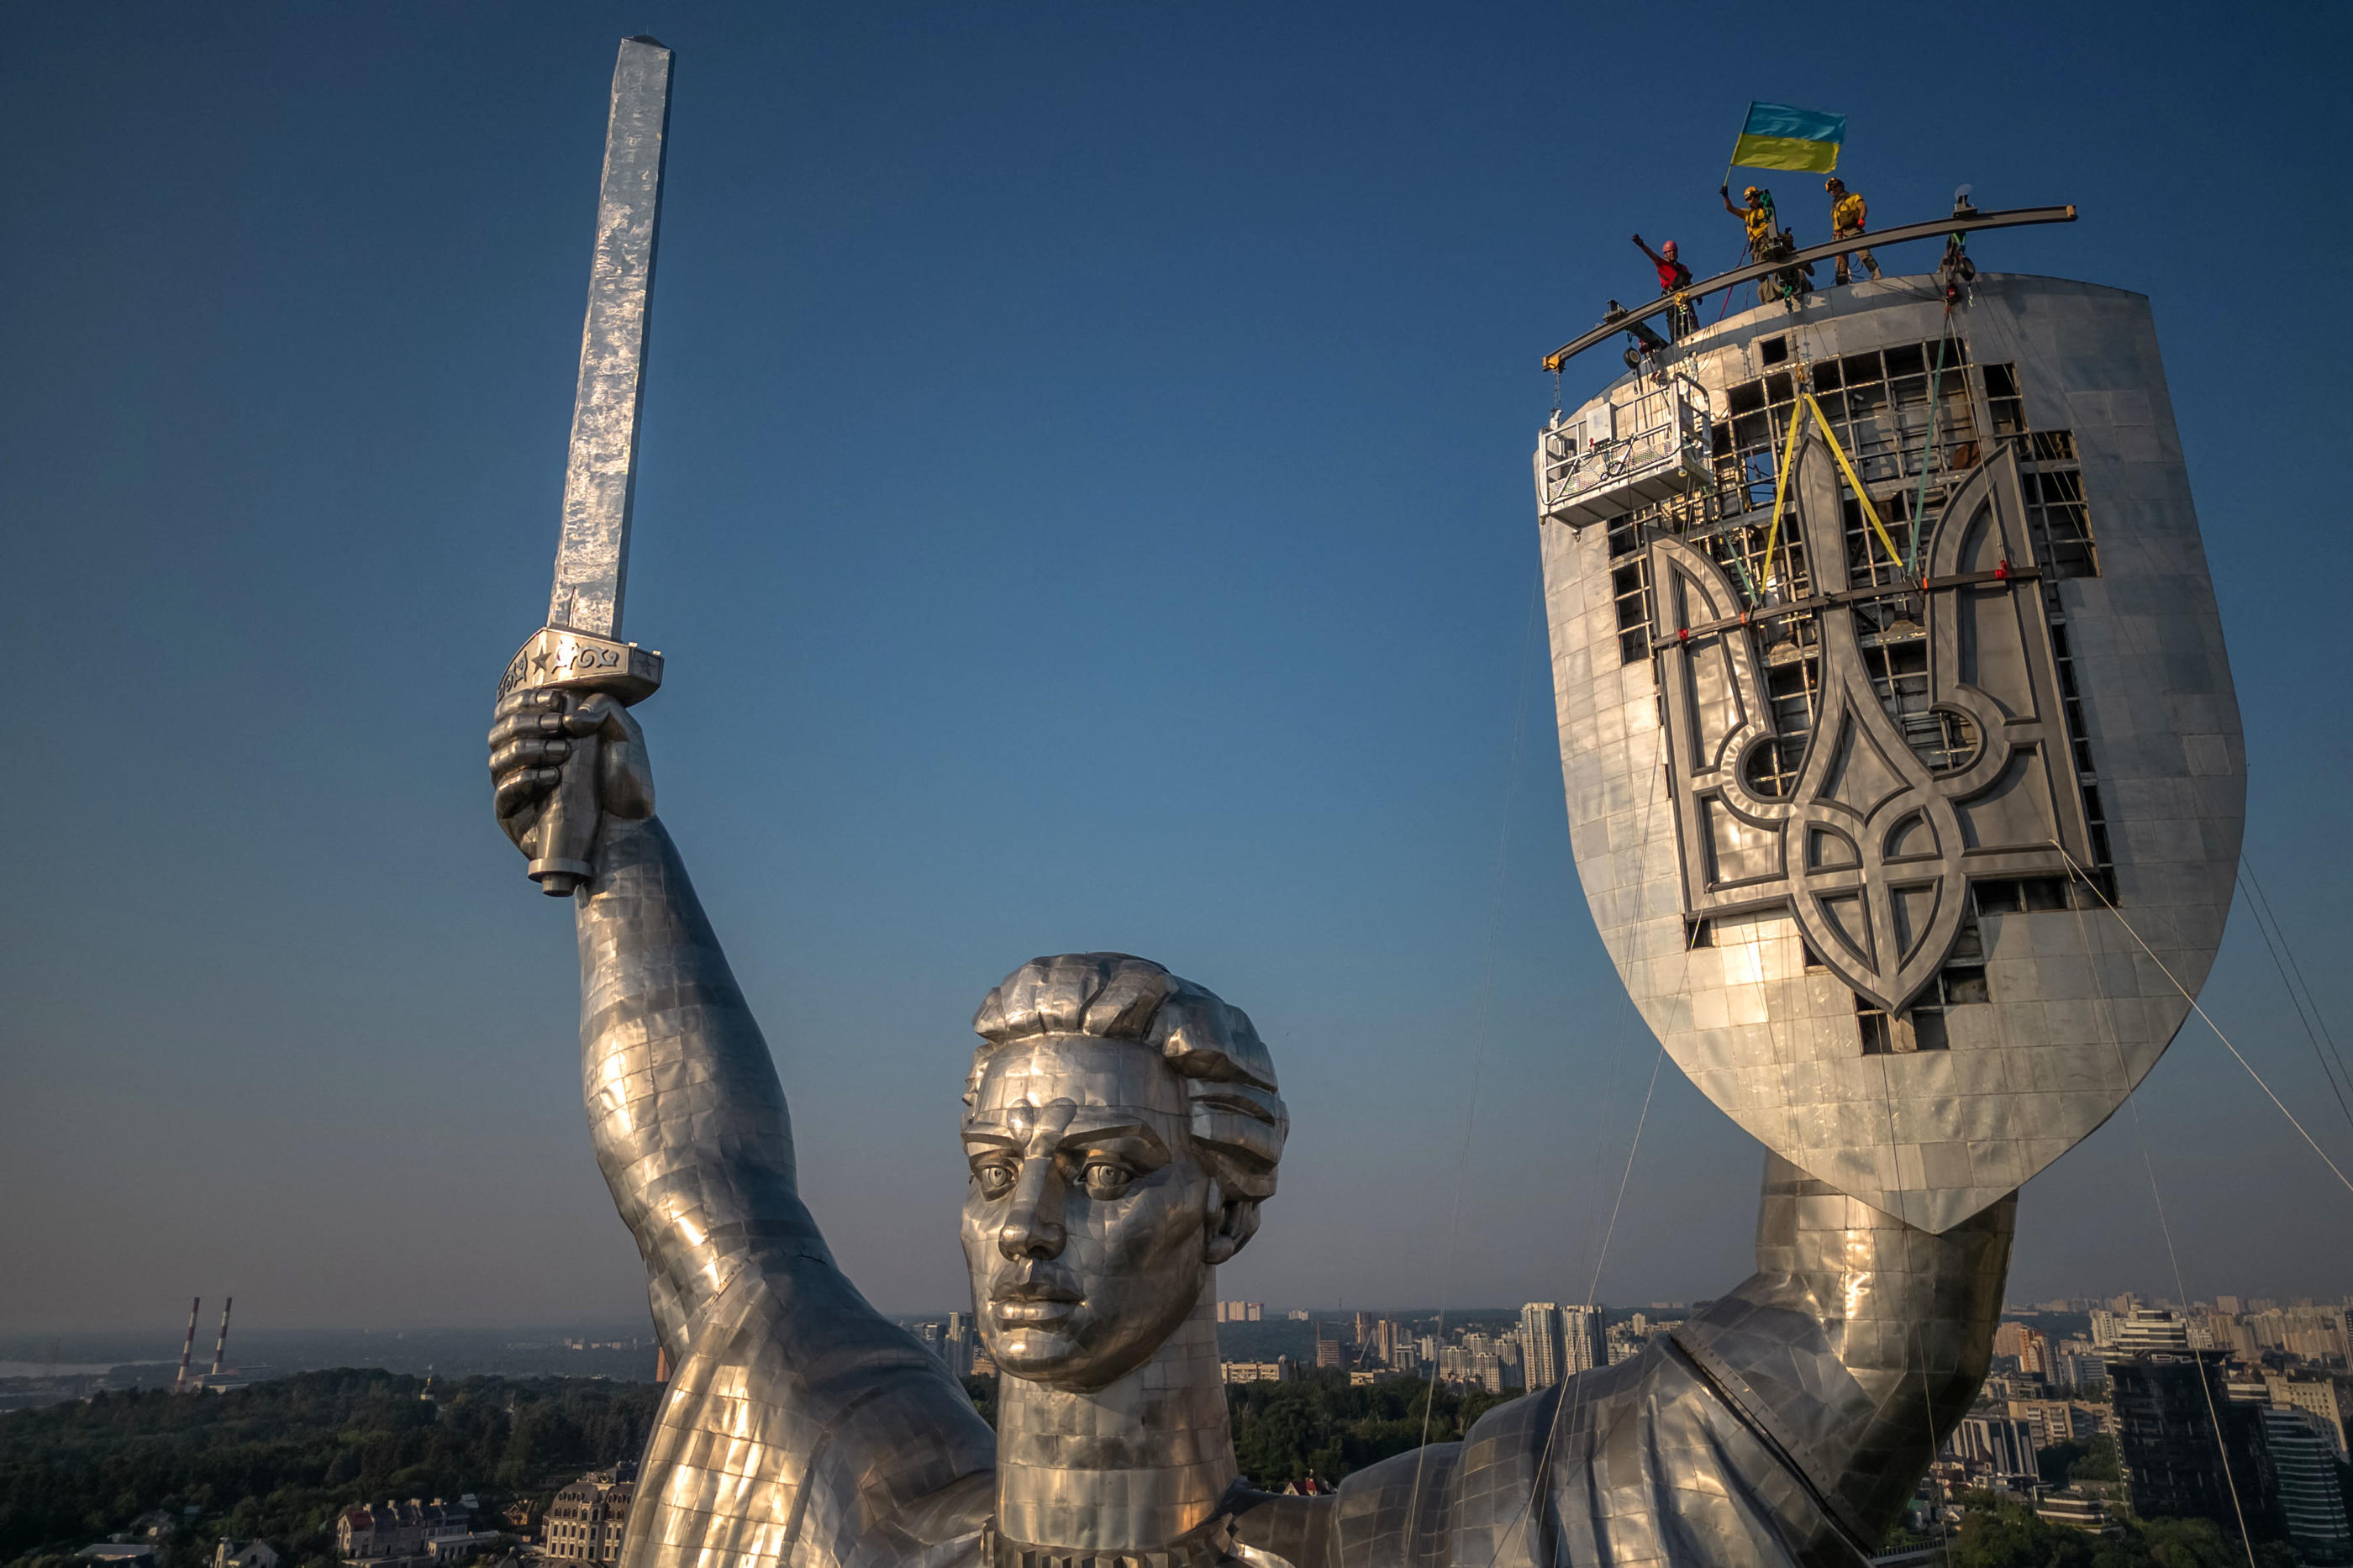 Kiev (Ukraine). Le trident national a remplacé le marteau et la faucille de l'Union soviétique sur le bouclier d'un monument de 62 mètres de haut. Roman PILIPEY / AFP